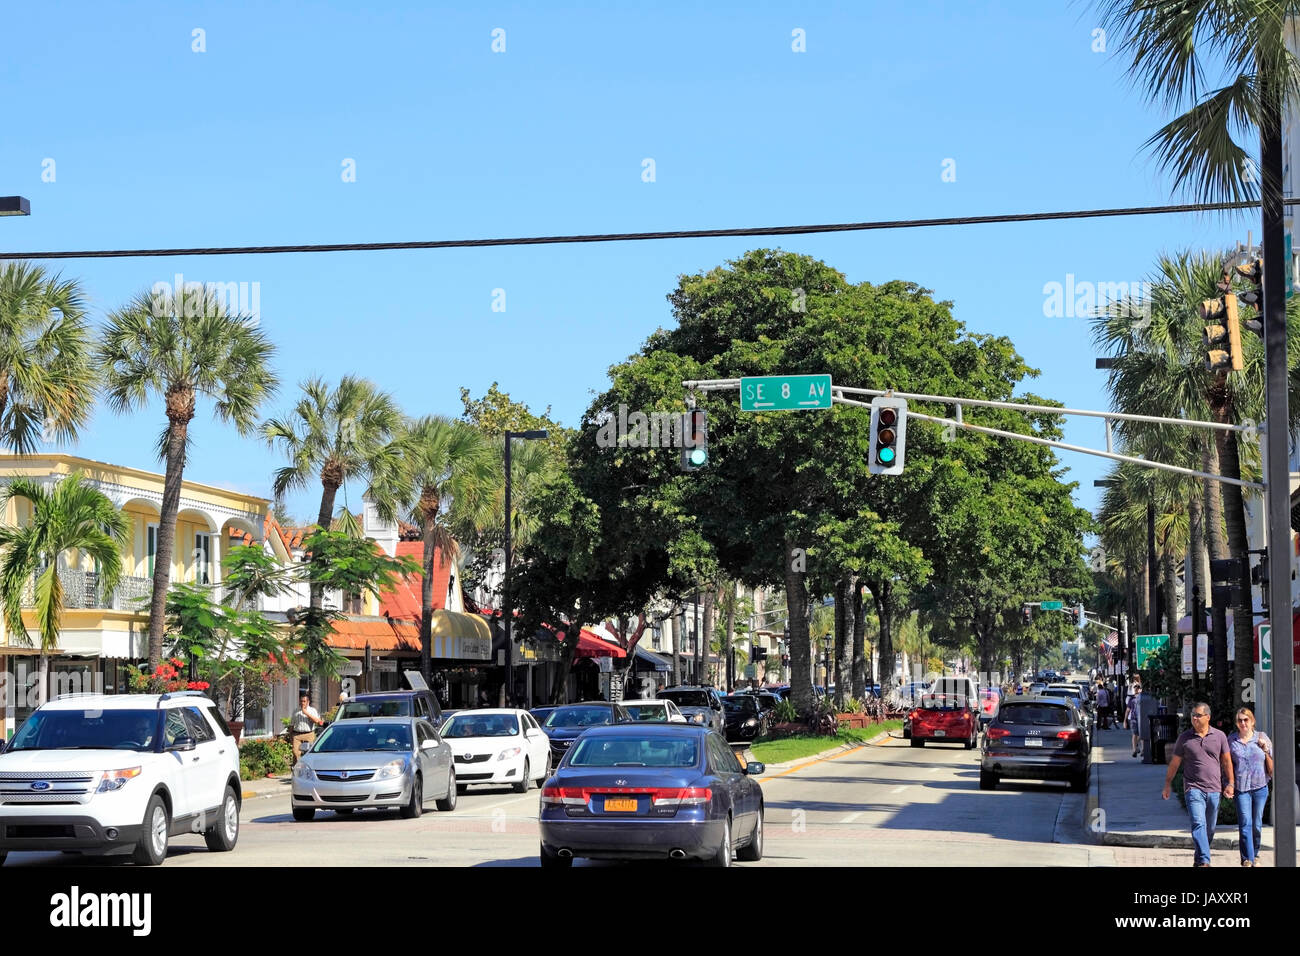 FORT LAUDERDALE, FLORIDA - 3. Februar 2013: Leute gehen und fahren entlang der tropischen und sehr gut bekannten gehobenen, Speise- und Unterhaltungsmöglichkeiten Einkaufsviertel Osten Las Olas Boulevard. Stockfoto